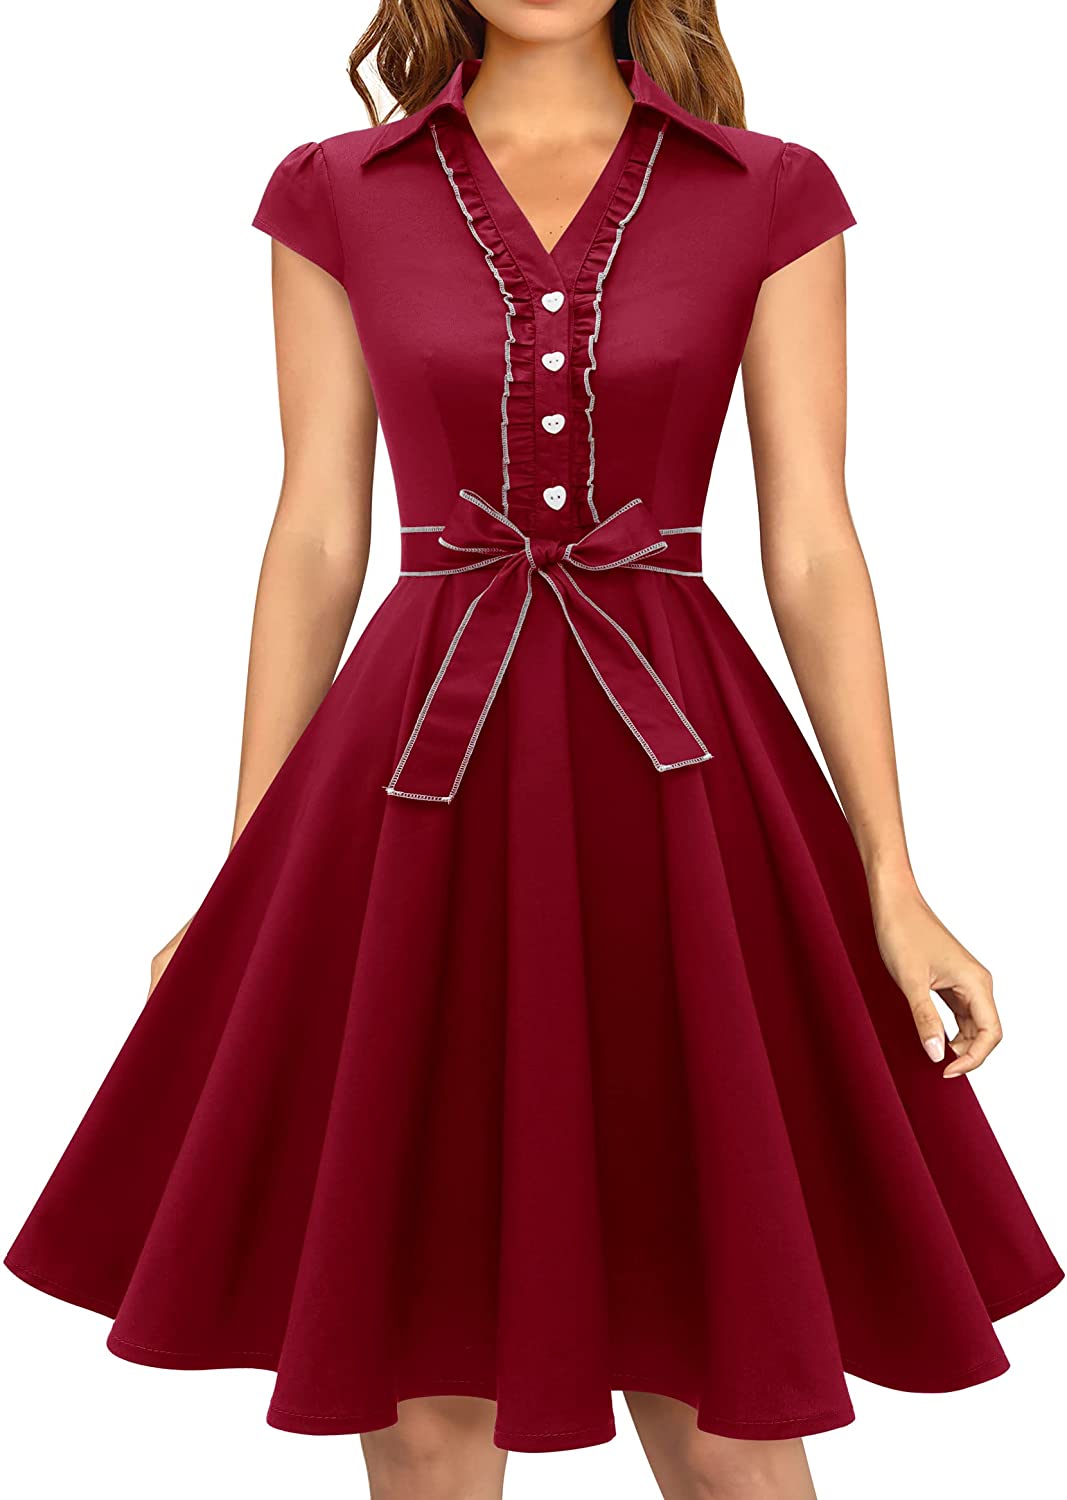 Wedtrend Women's 1950s Retro Rockabilly Dress Cap Sleeve Vintage Swing Dress  | eBay